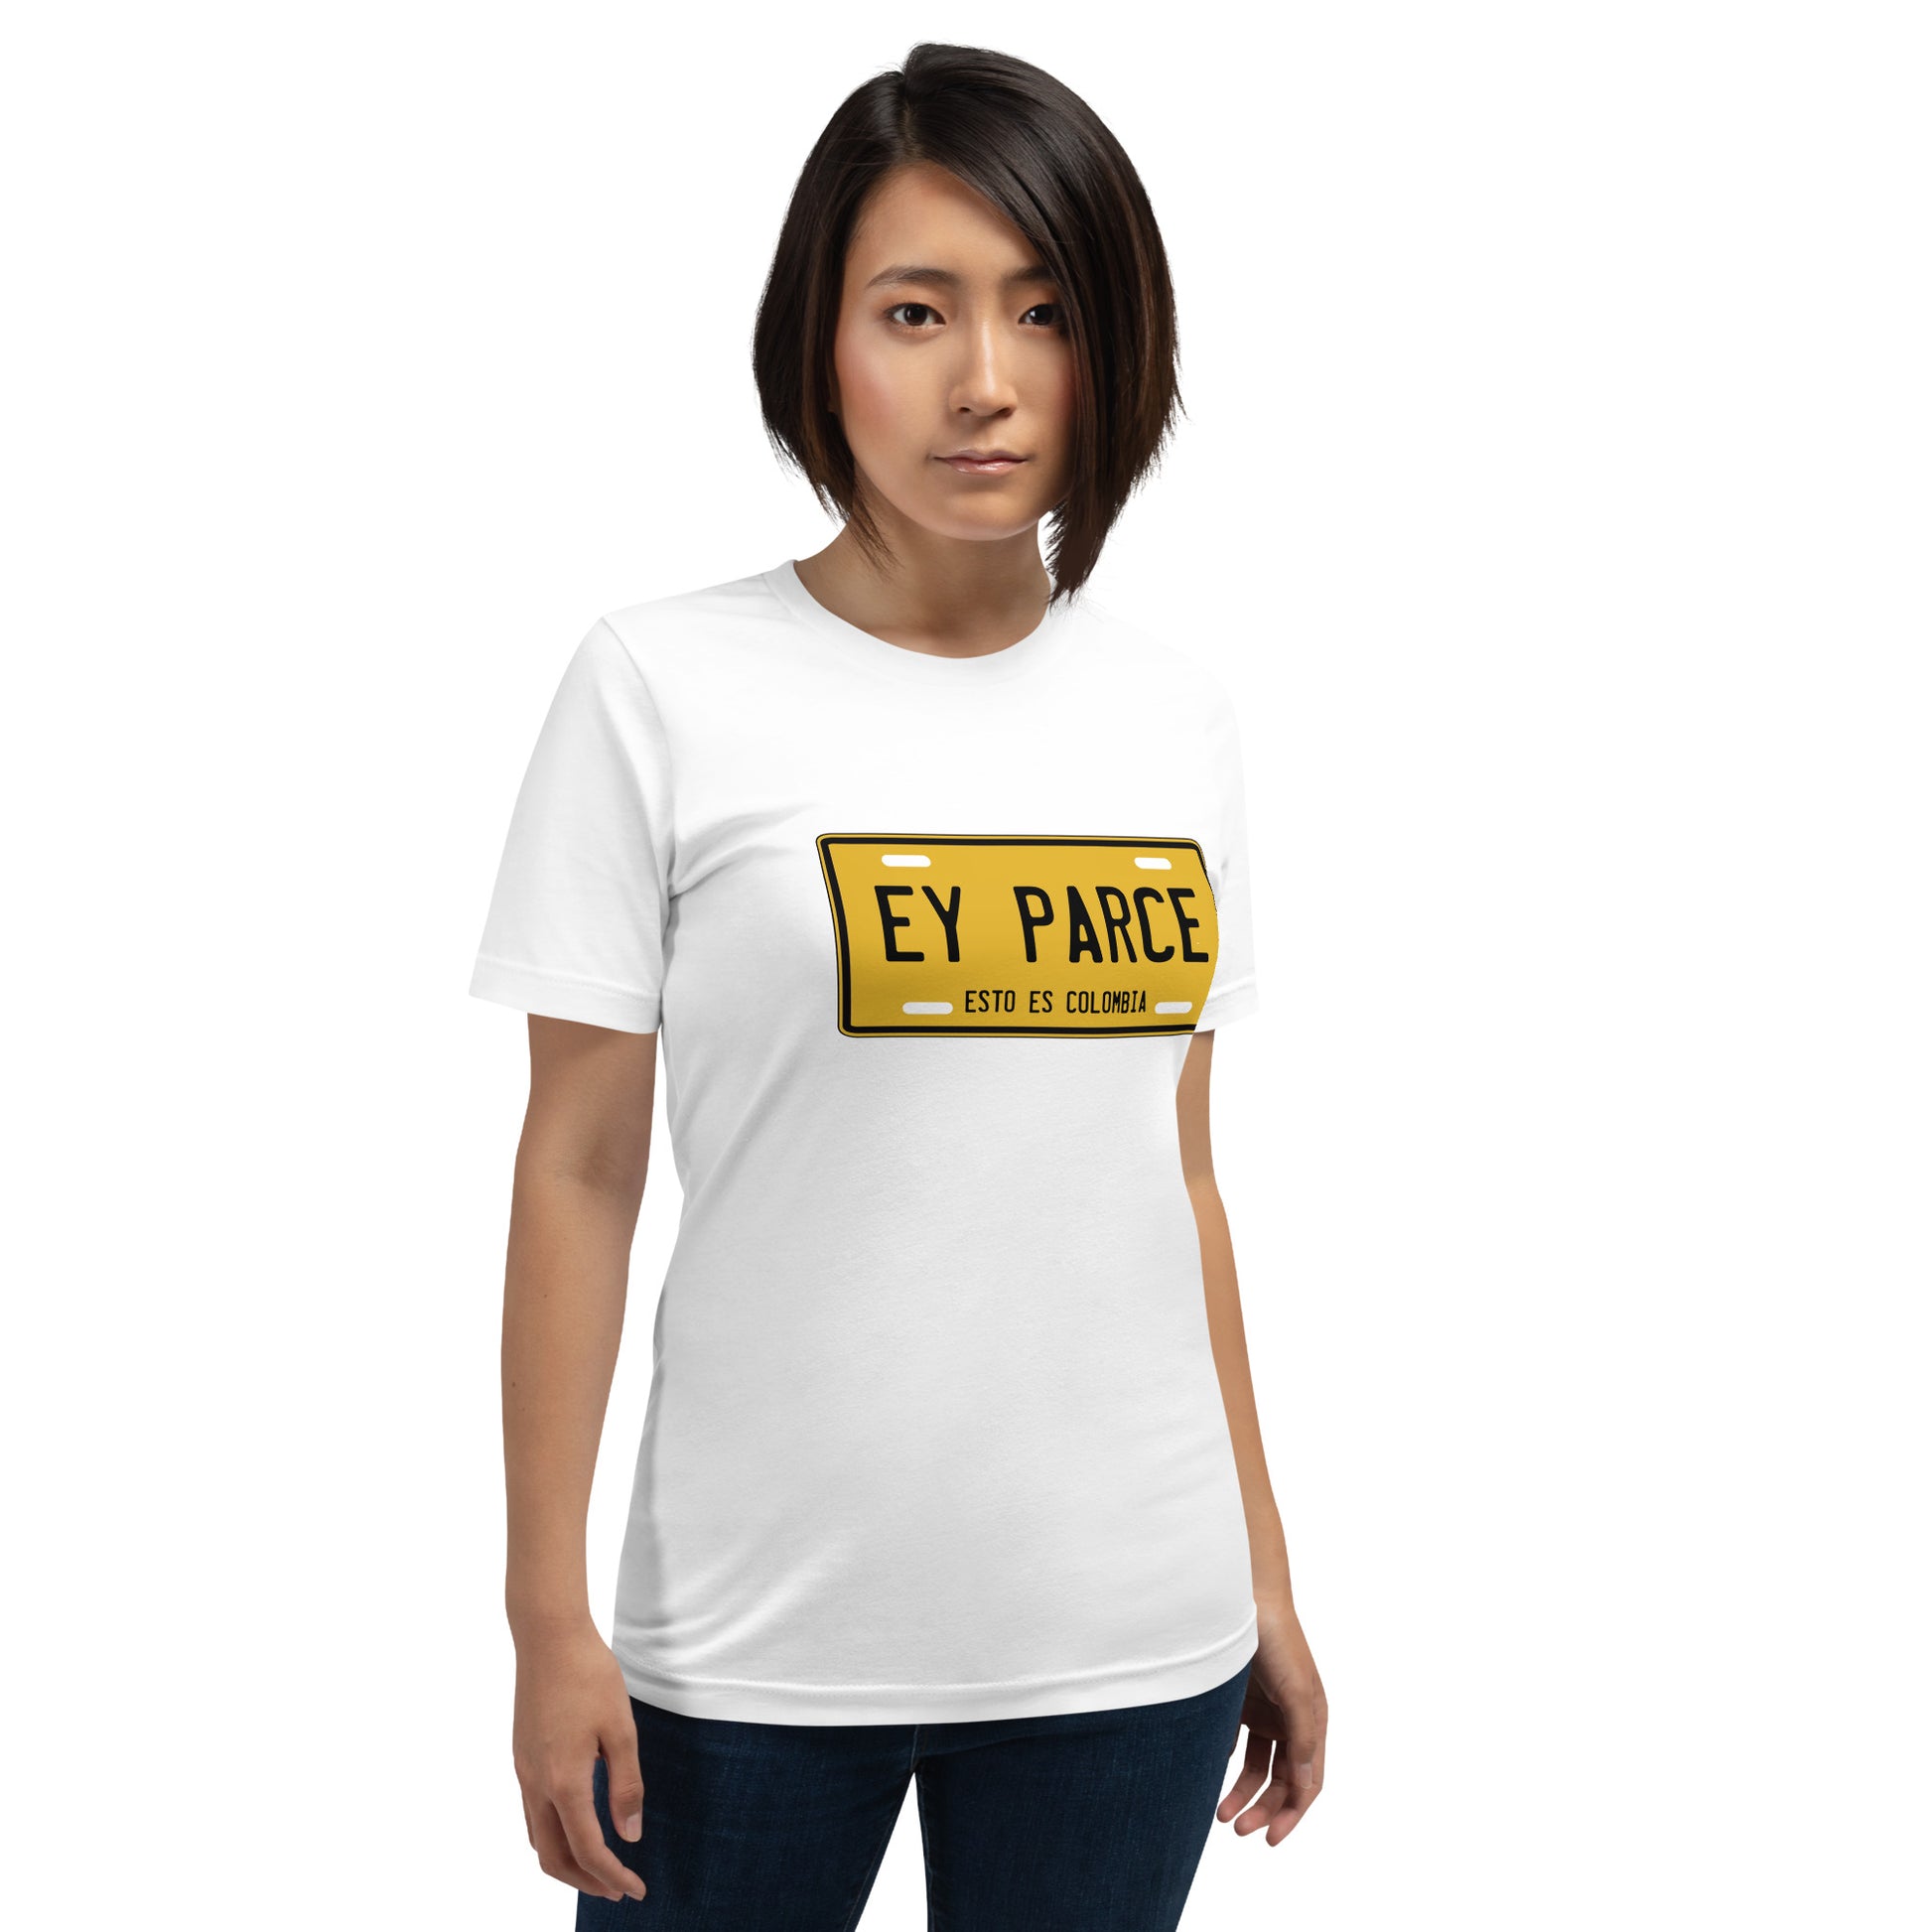 Muestra tu orgullo colombiano con la Camiseta Placa Ey Parce. Diseñada con los mejores materiales y un estampado duradero.